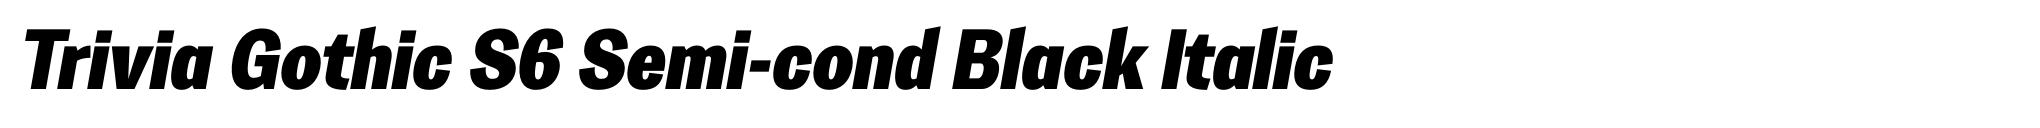 Trivia Gothic S6 Semi-cond Black Italic image